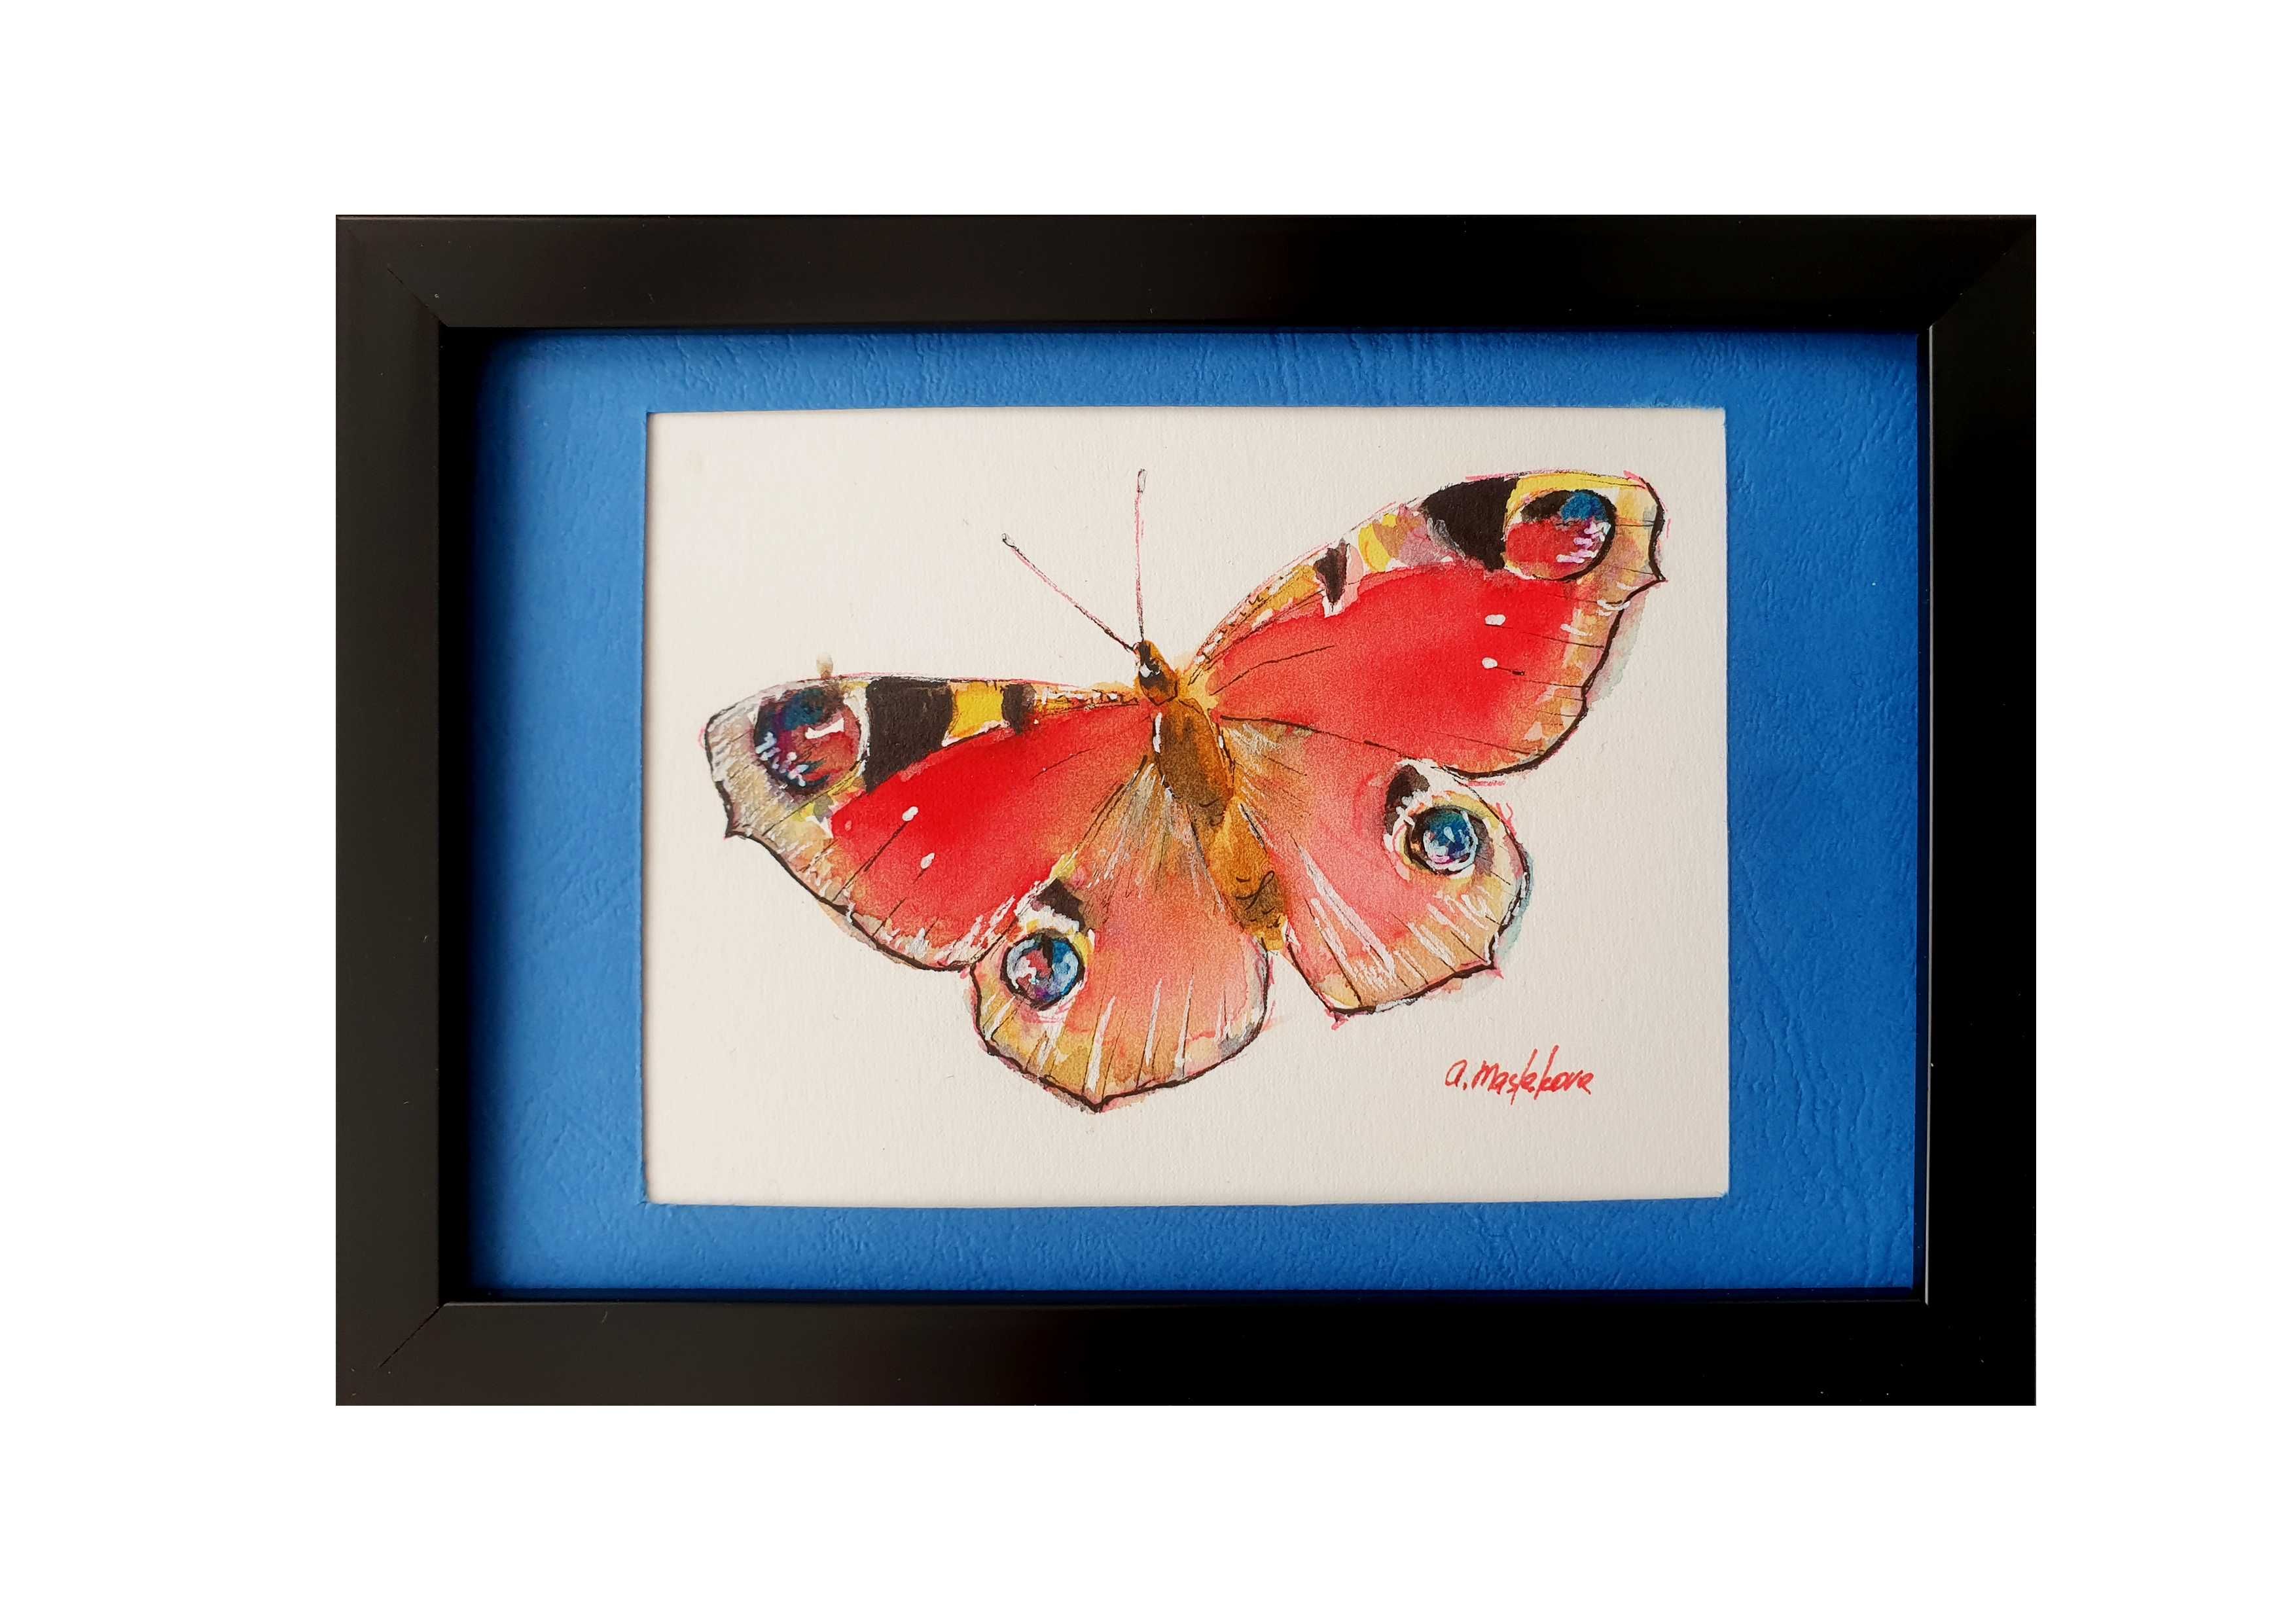 Obraz motyle owady Akwarela ręcznie malowana "Motyl" +rama